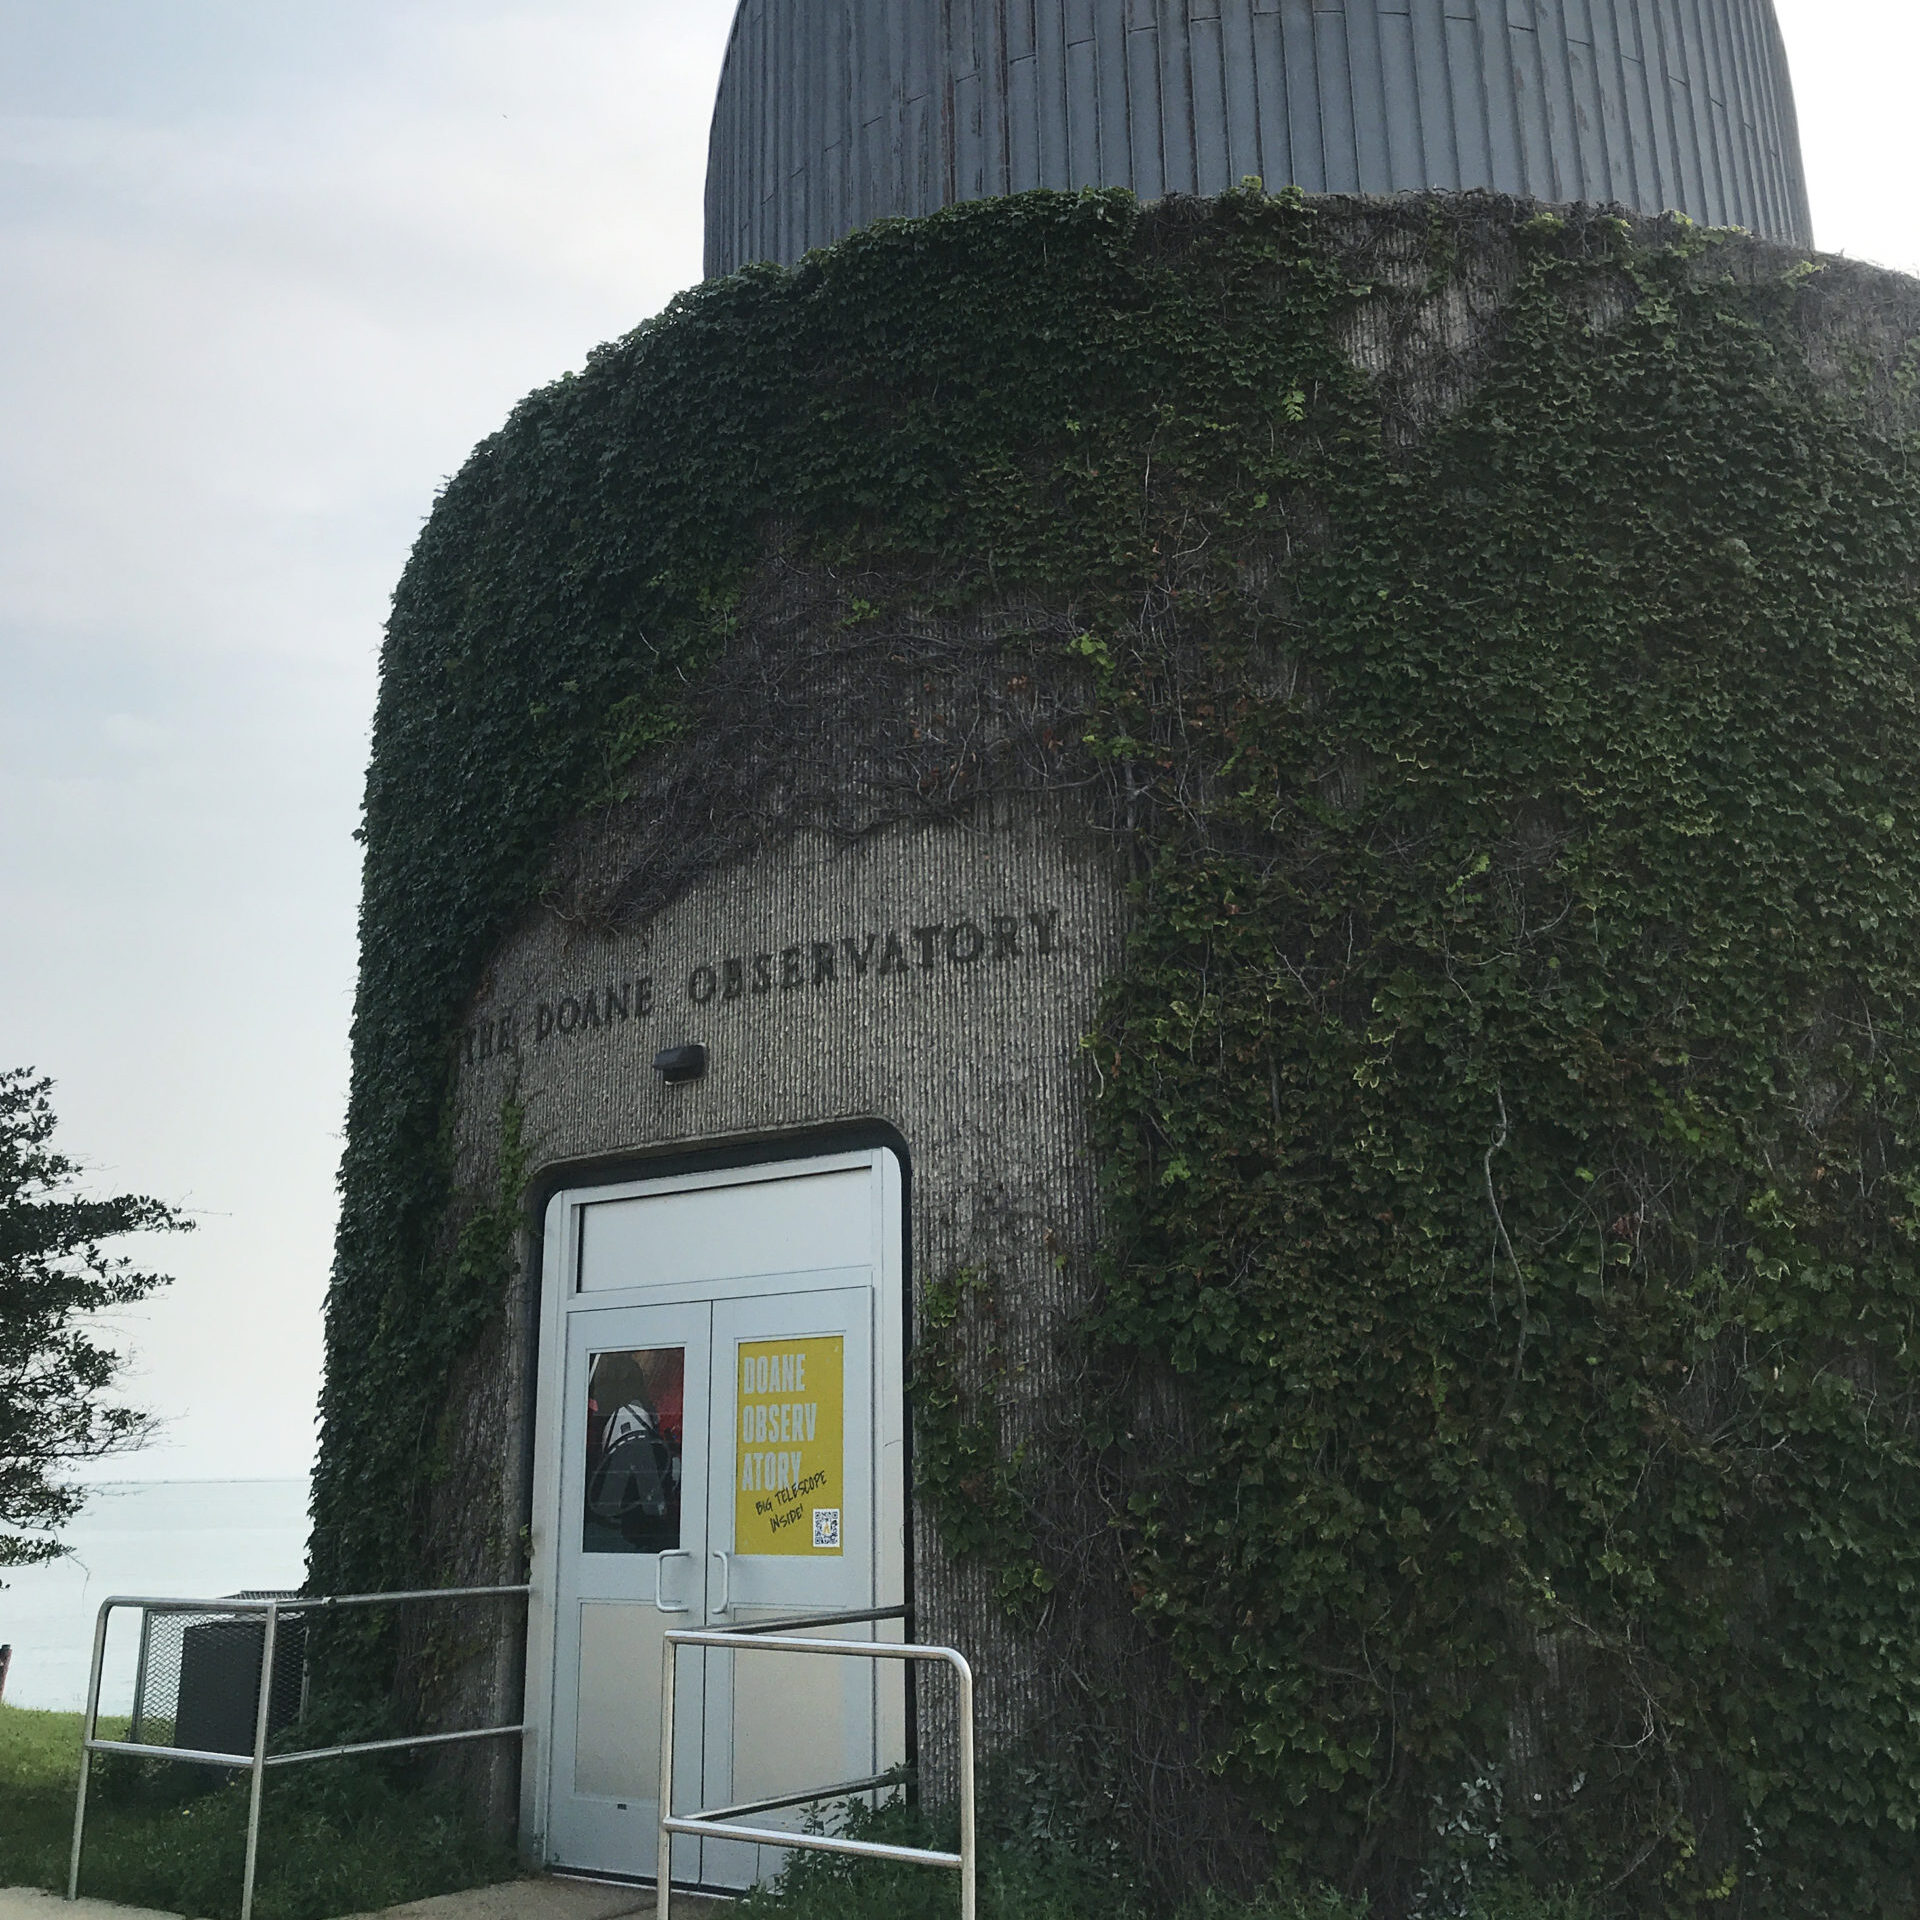 Image Caption: The Adler Planetarium Doane Observatory July 2021